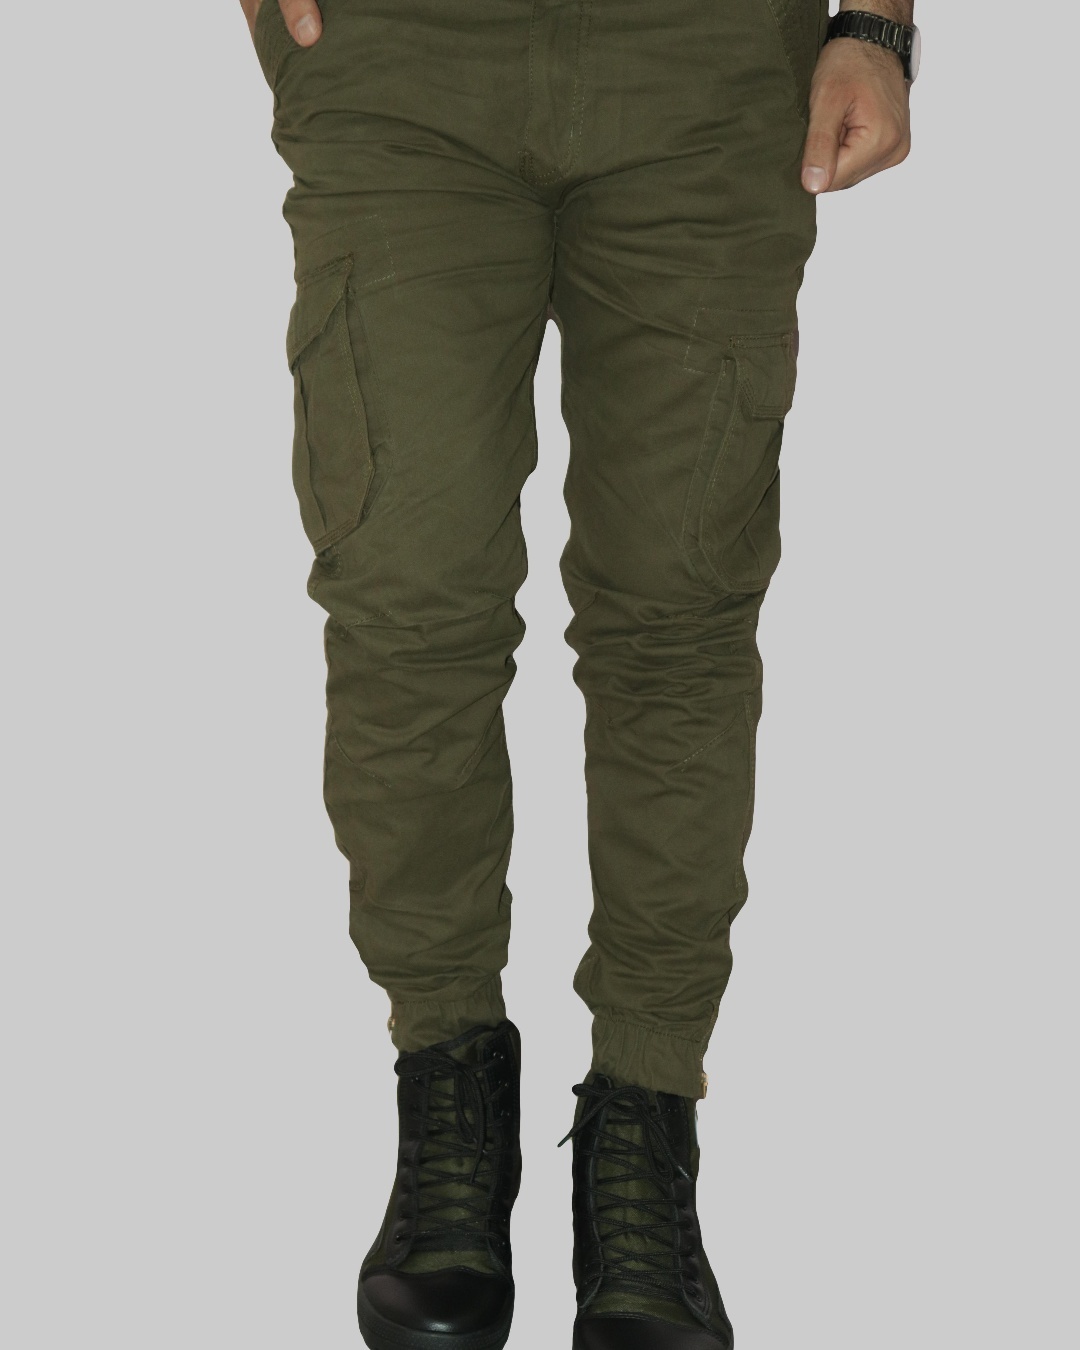 Buy Men's Green Cargo Pants Online at Bewakoof